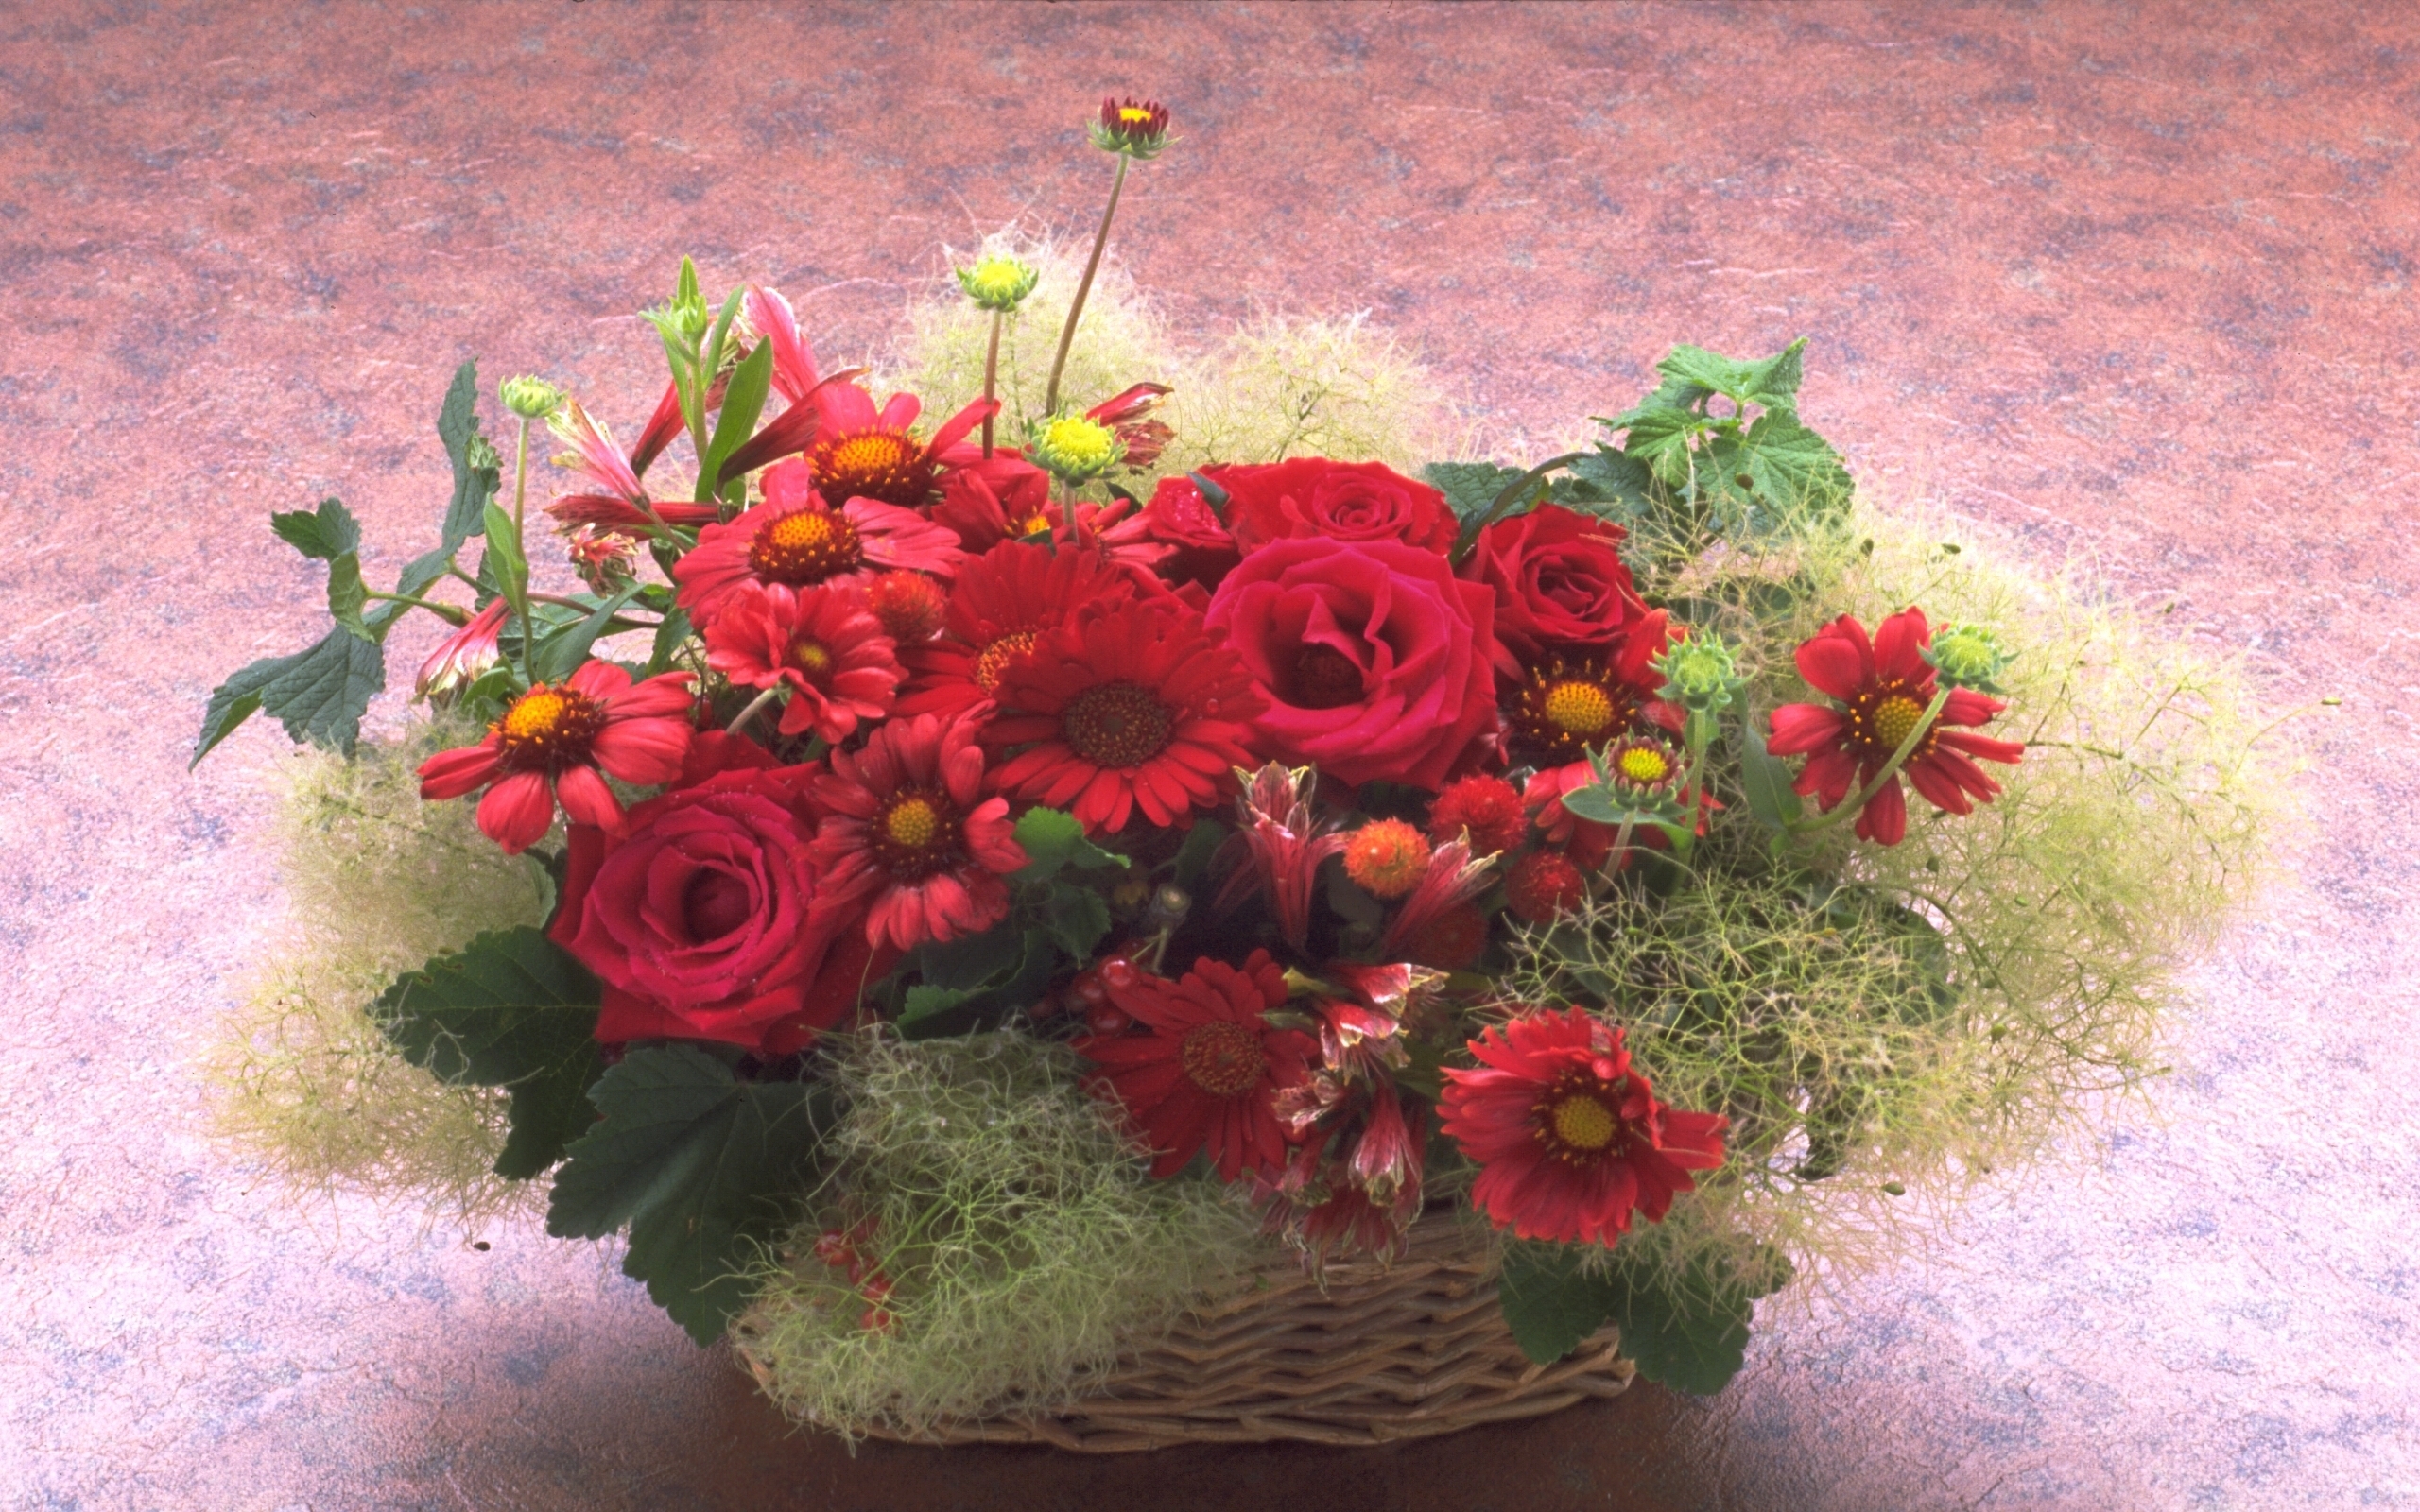 Скачать обои бесплатно Праздники, Цветы, Растения, Букеты, Хризантемы, Розы картинка на рабочий стол ПК